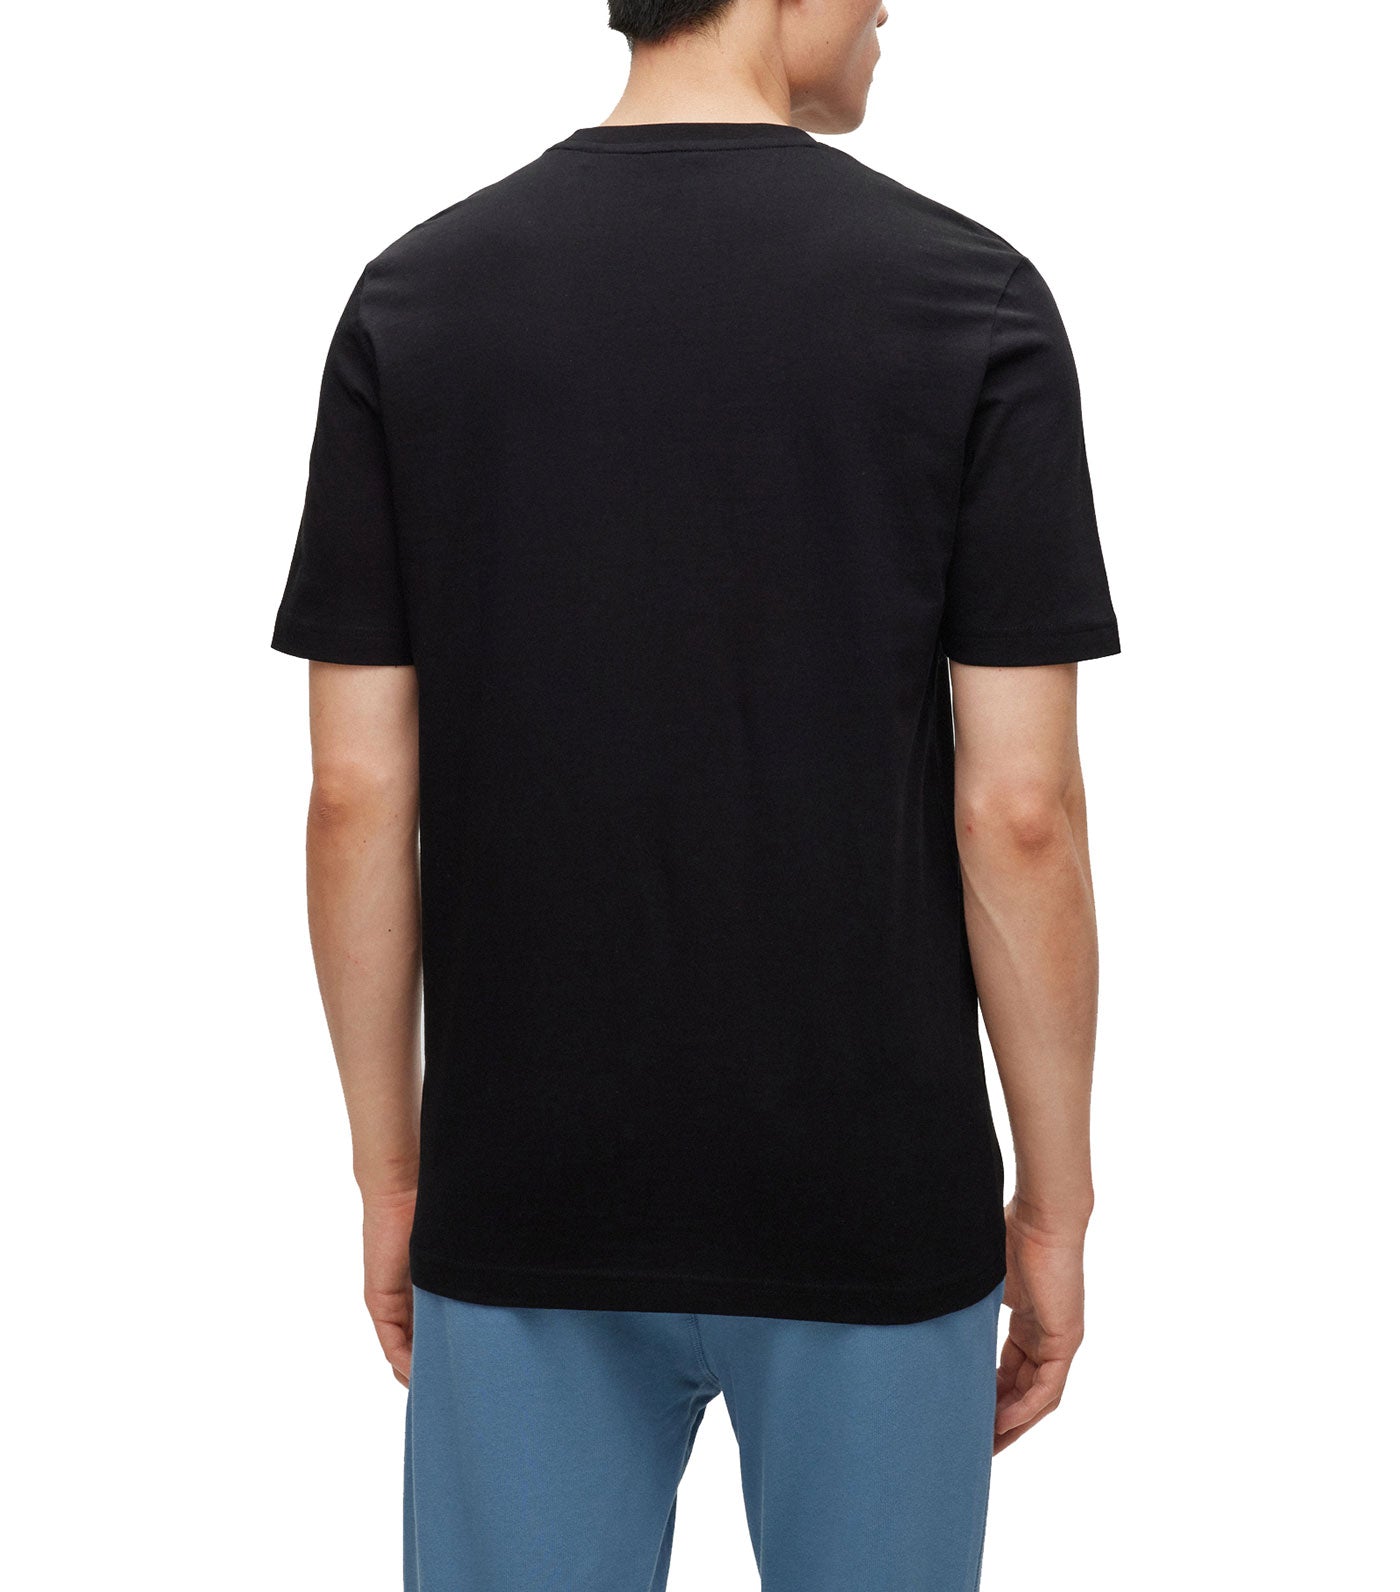 Tiburt 345 T-Shirt Black